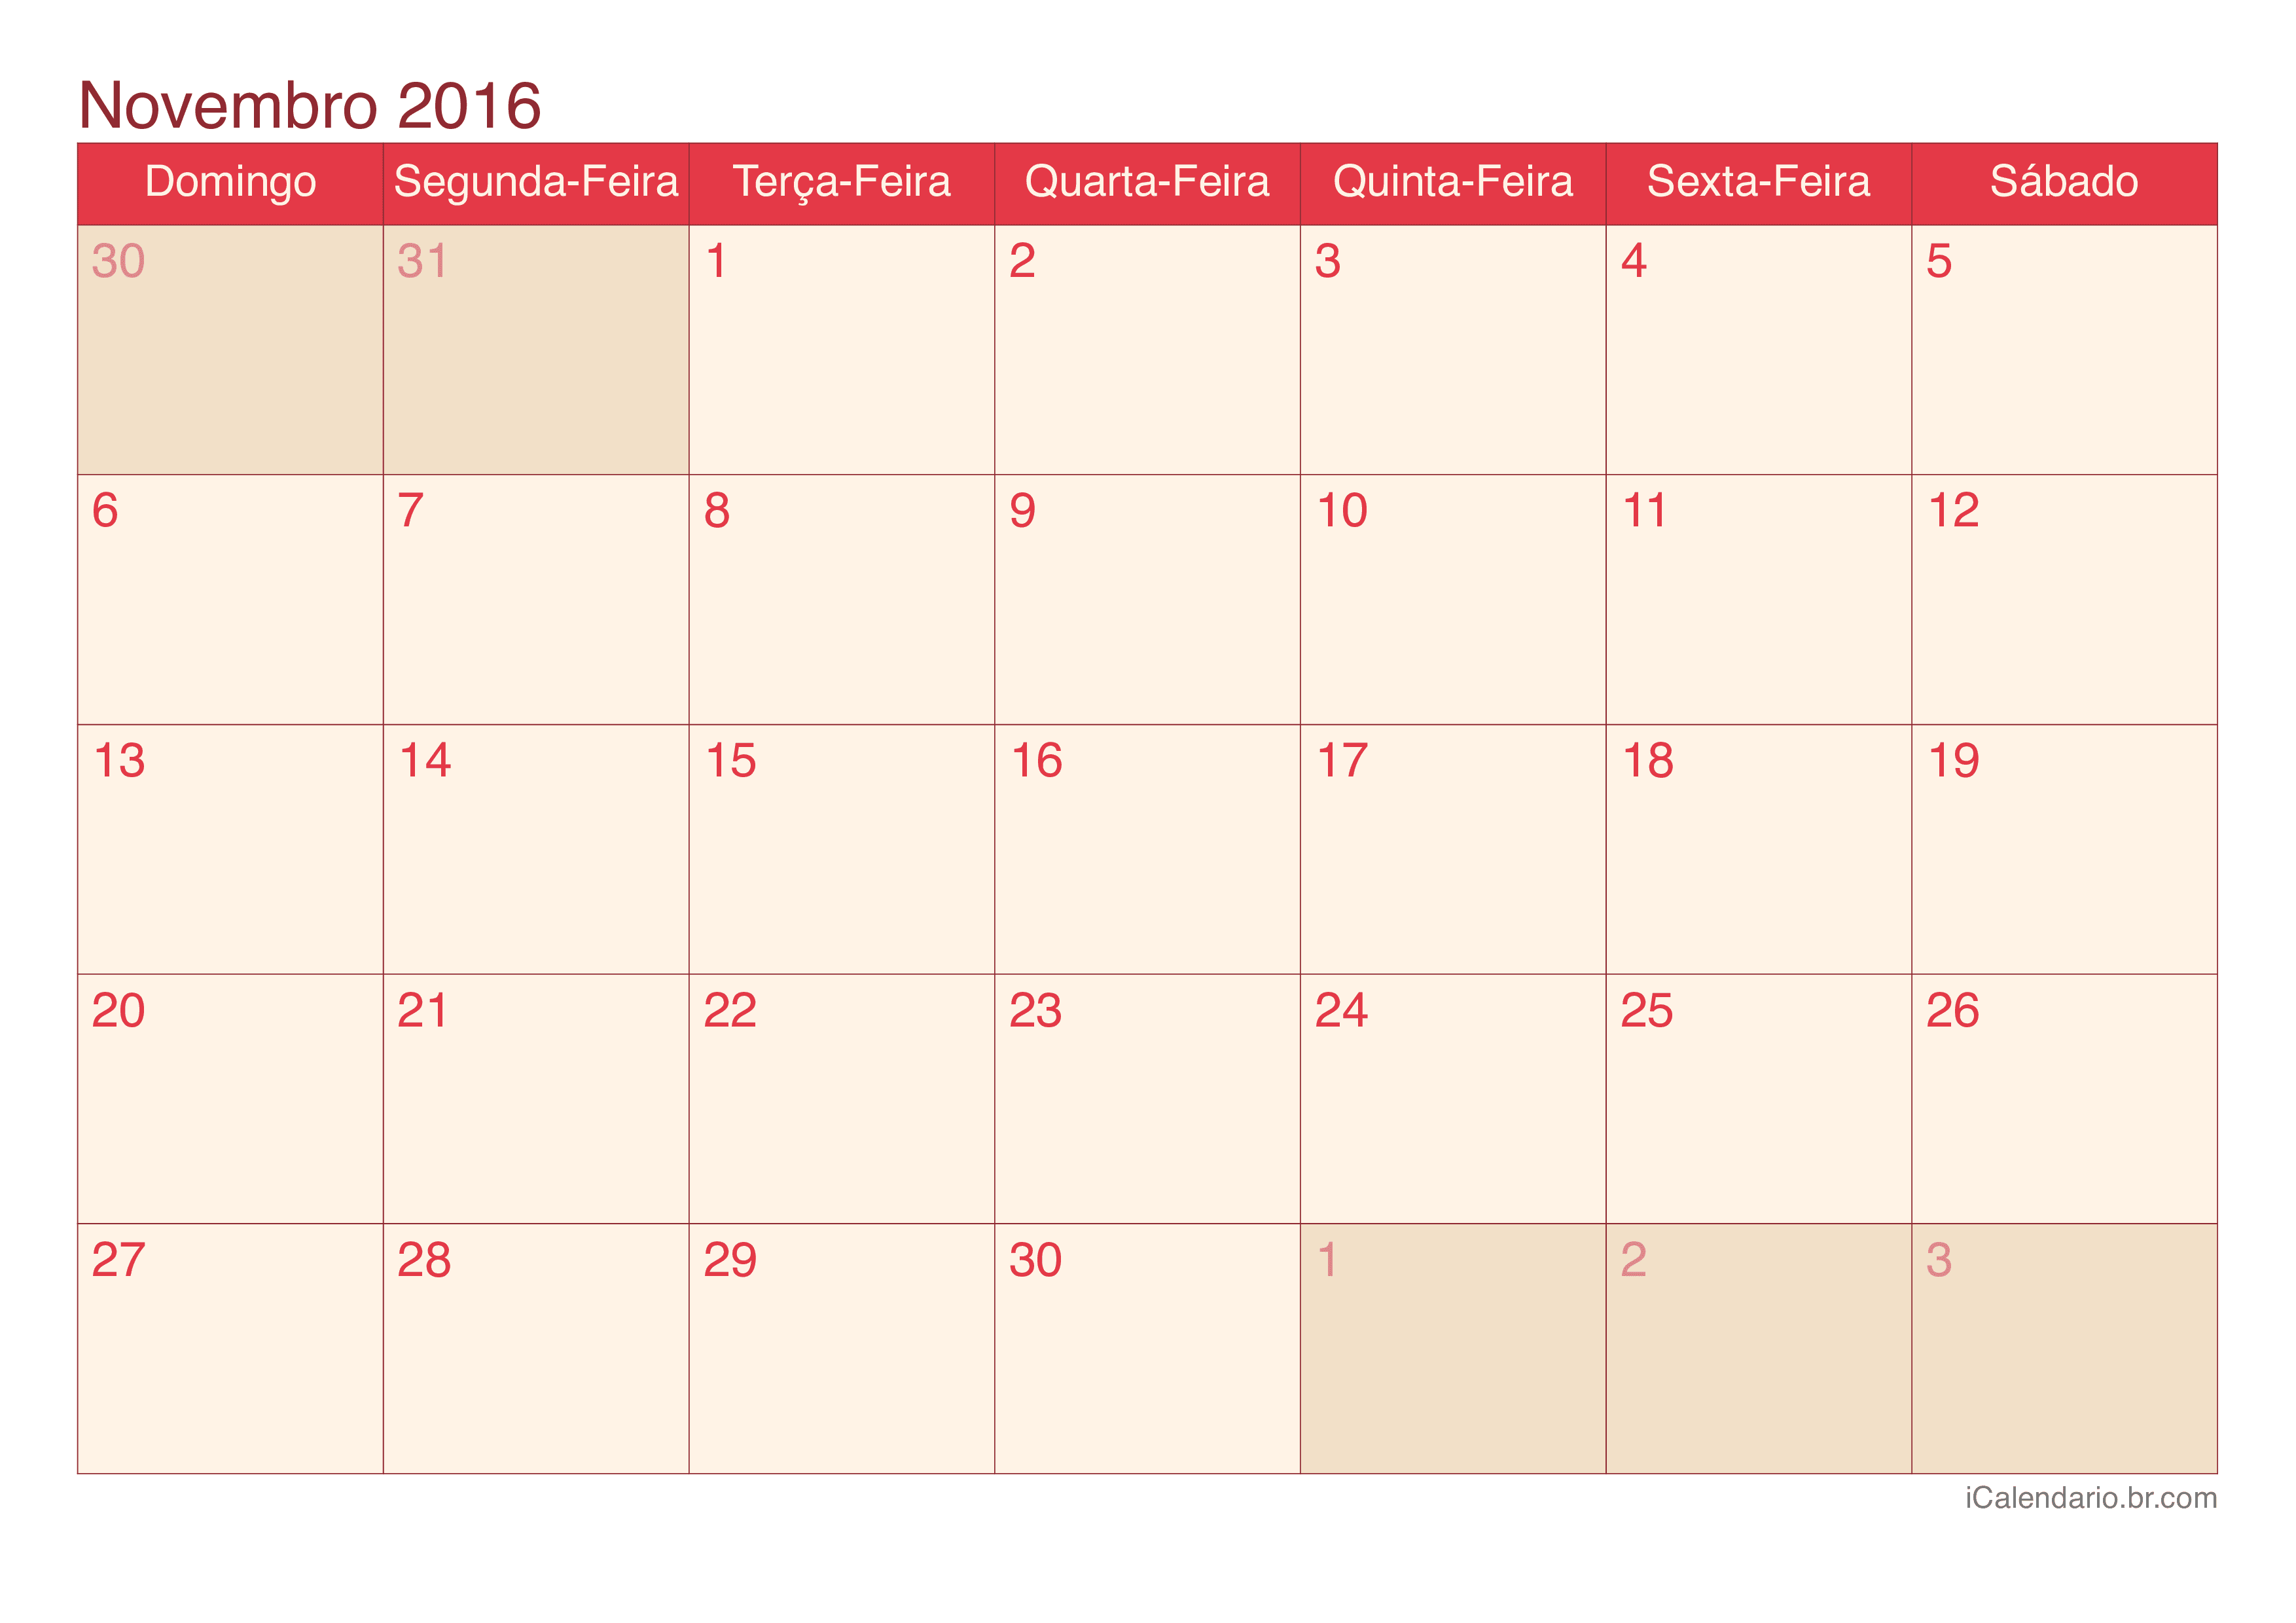 Calendário de novembro 2016 - Cherry